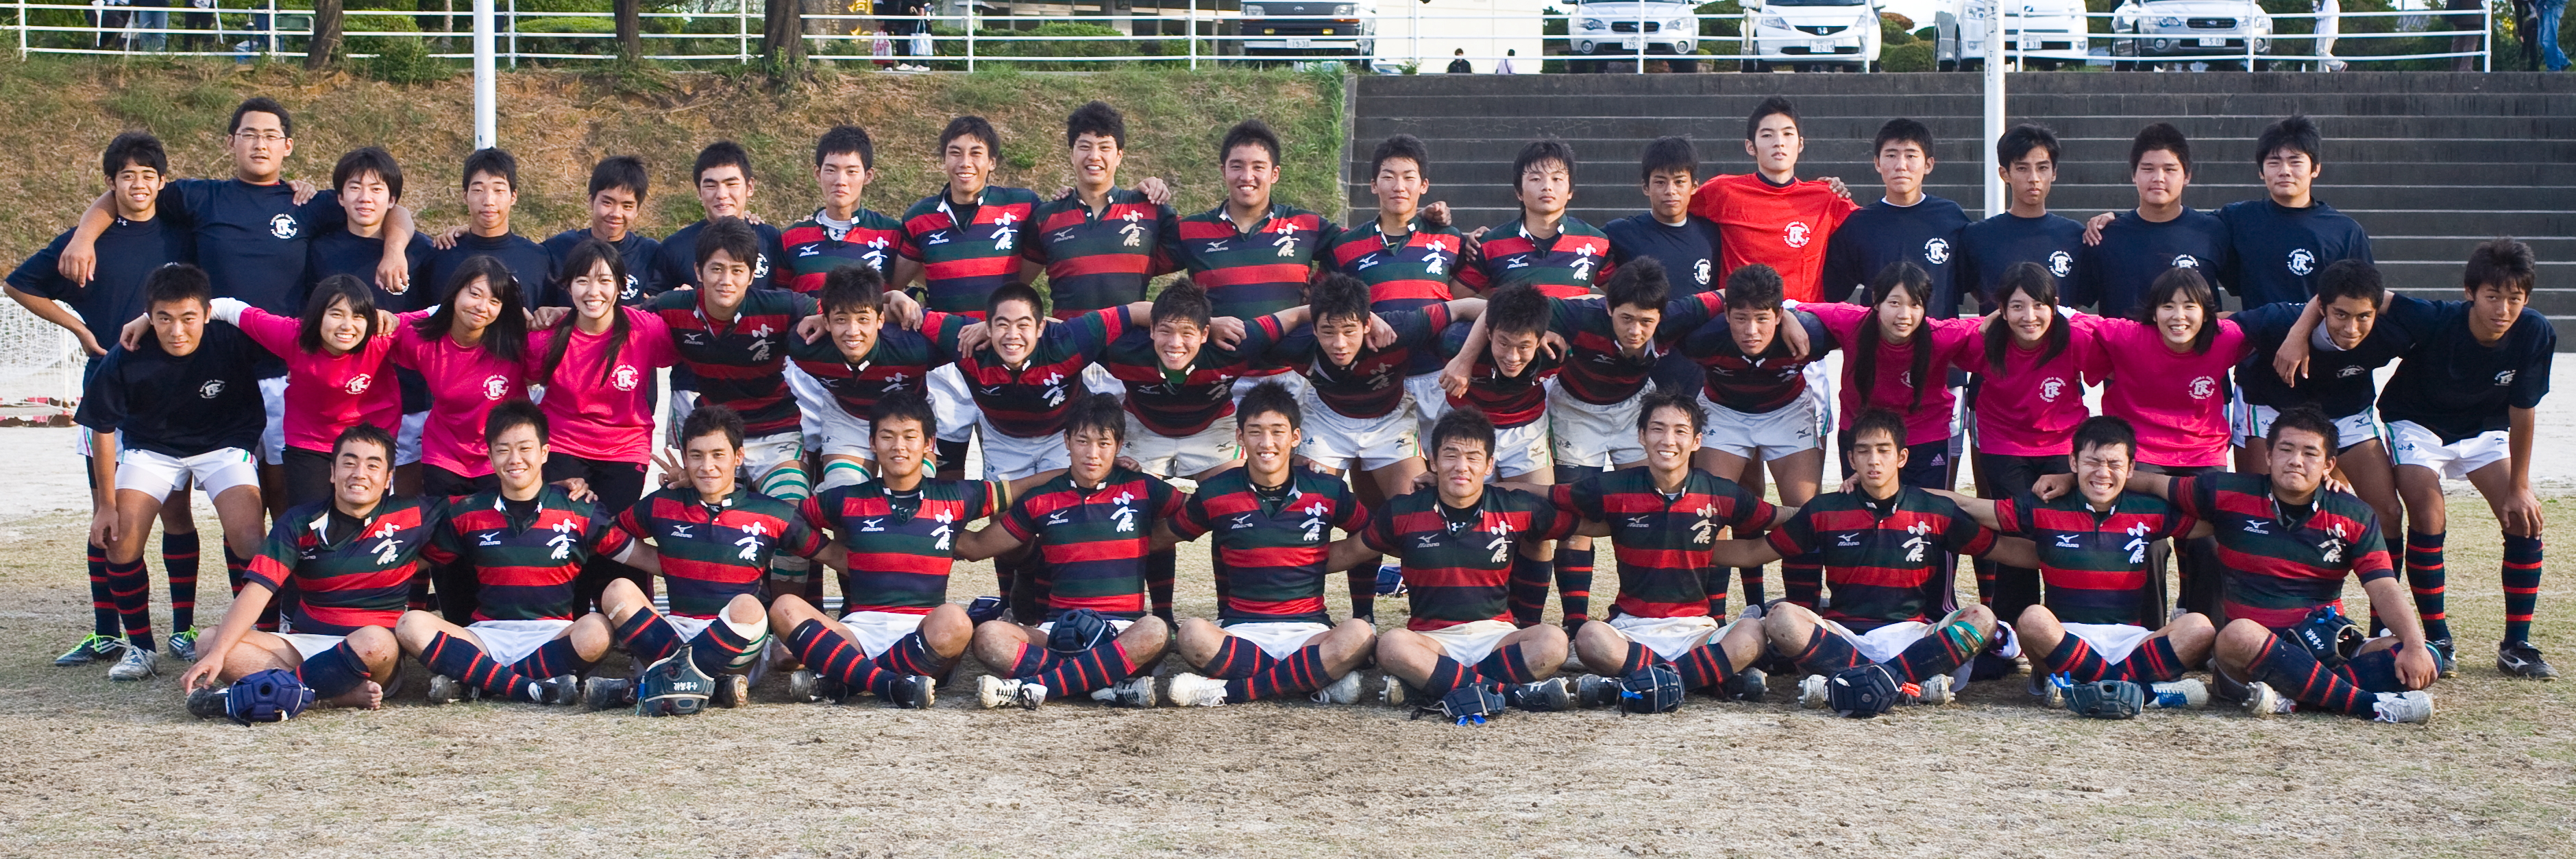 http://kokura-rugby.sakura.ne.jp/%E5%85%A8%E5%93%A1%E9%9B%86%E5%90%882011.10.23-A.JPG